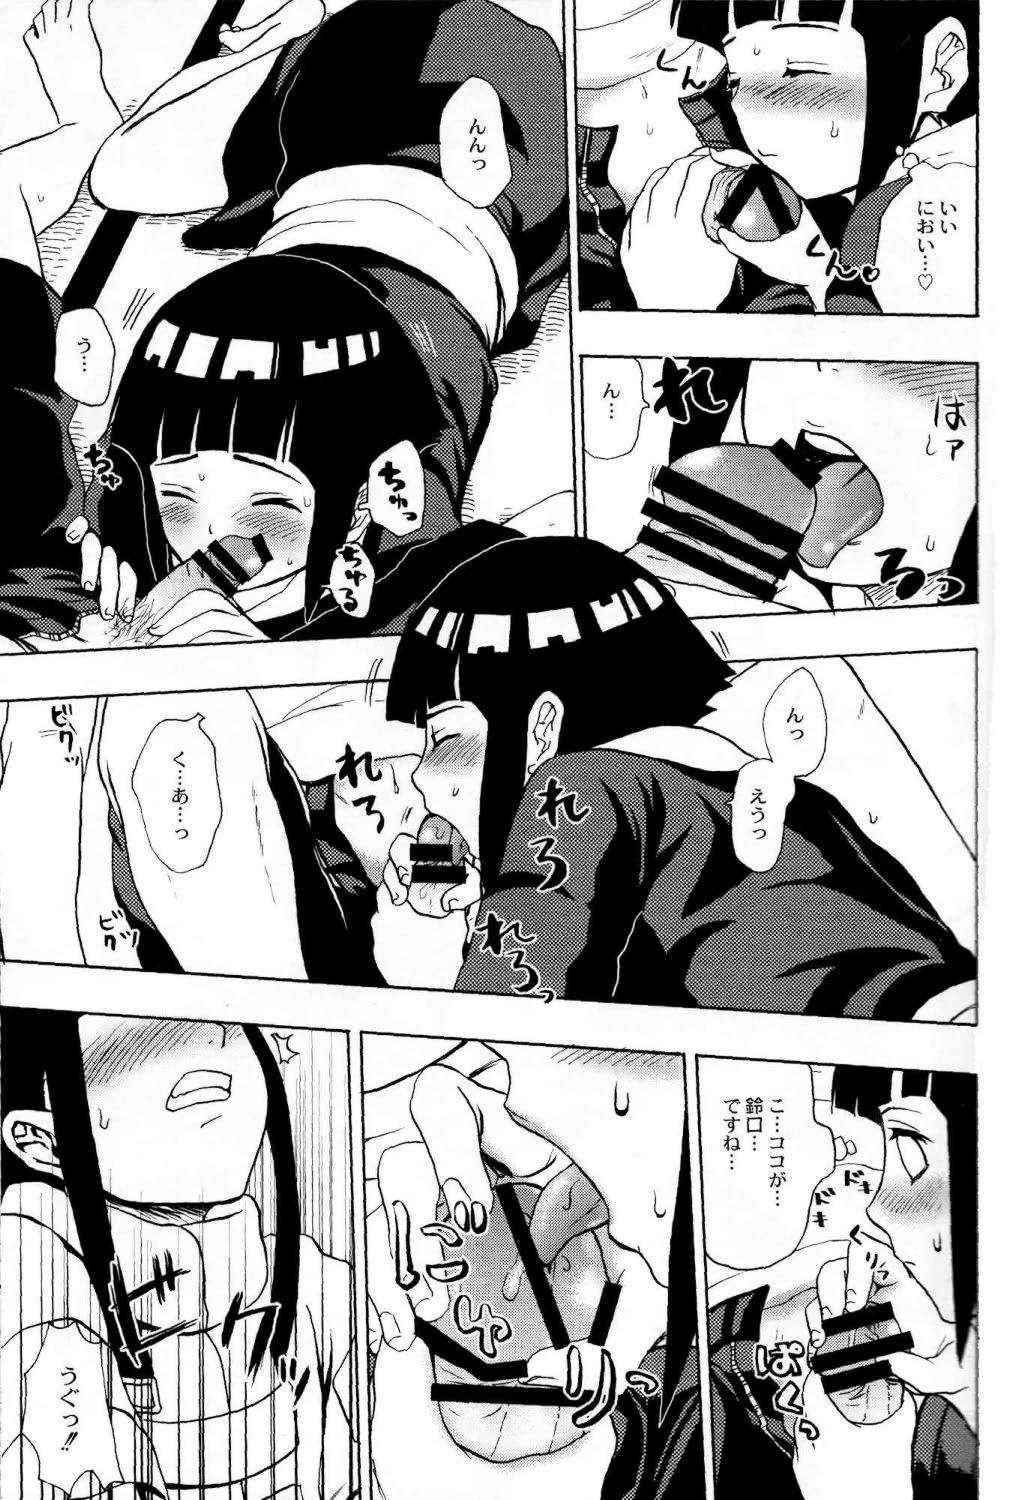 Hardcore Porn Ie de Nii-san to - Naruto Free Blowjobs - Page 10